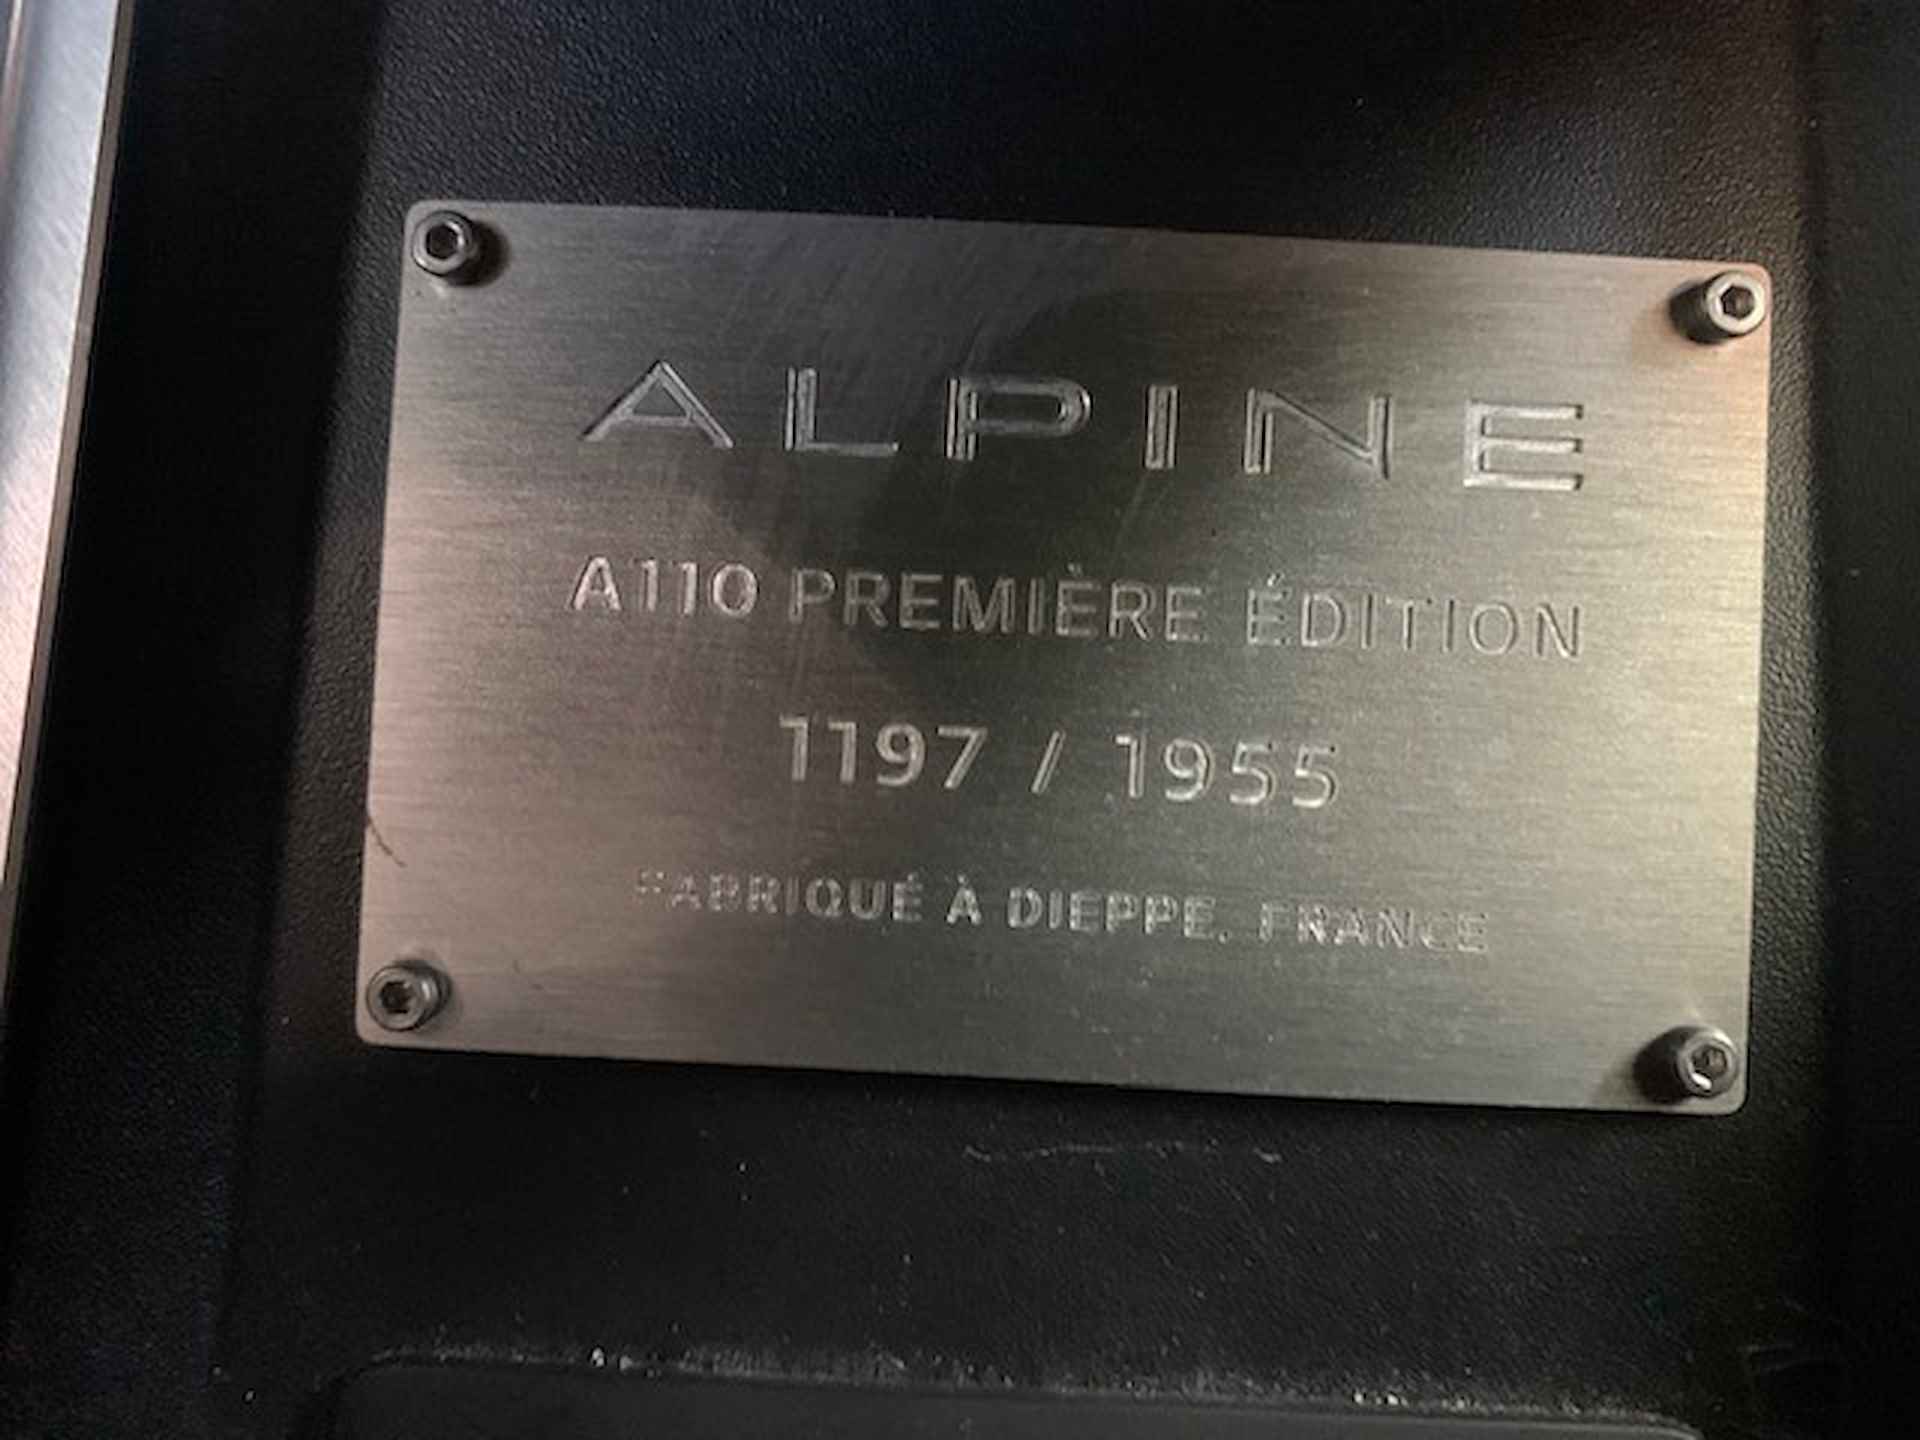 ALPINE A110 PREMIERE EDITION nr. 1197 / 1955 van 1e eigenaar - 3/16